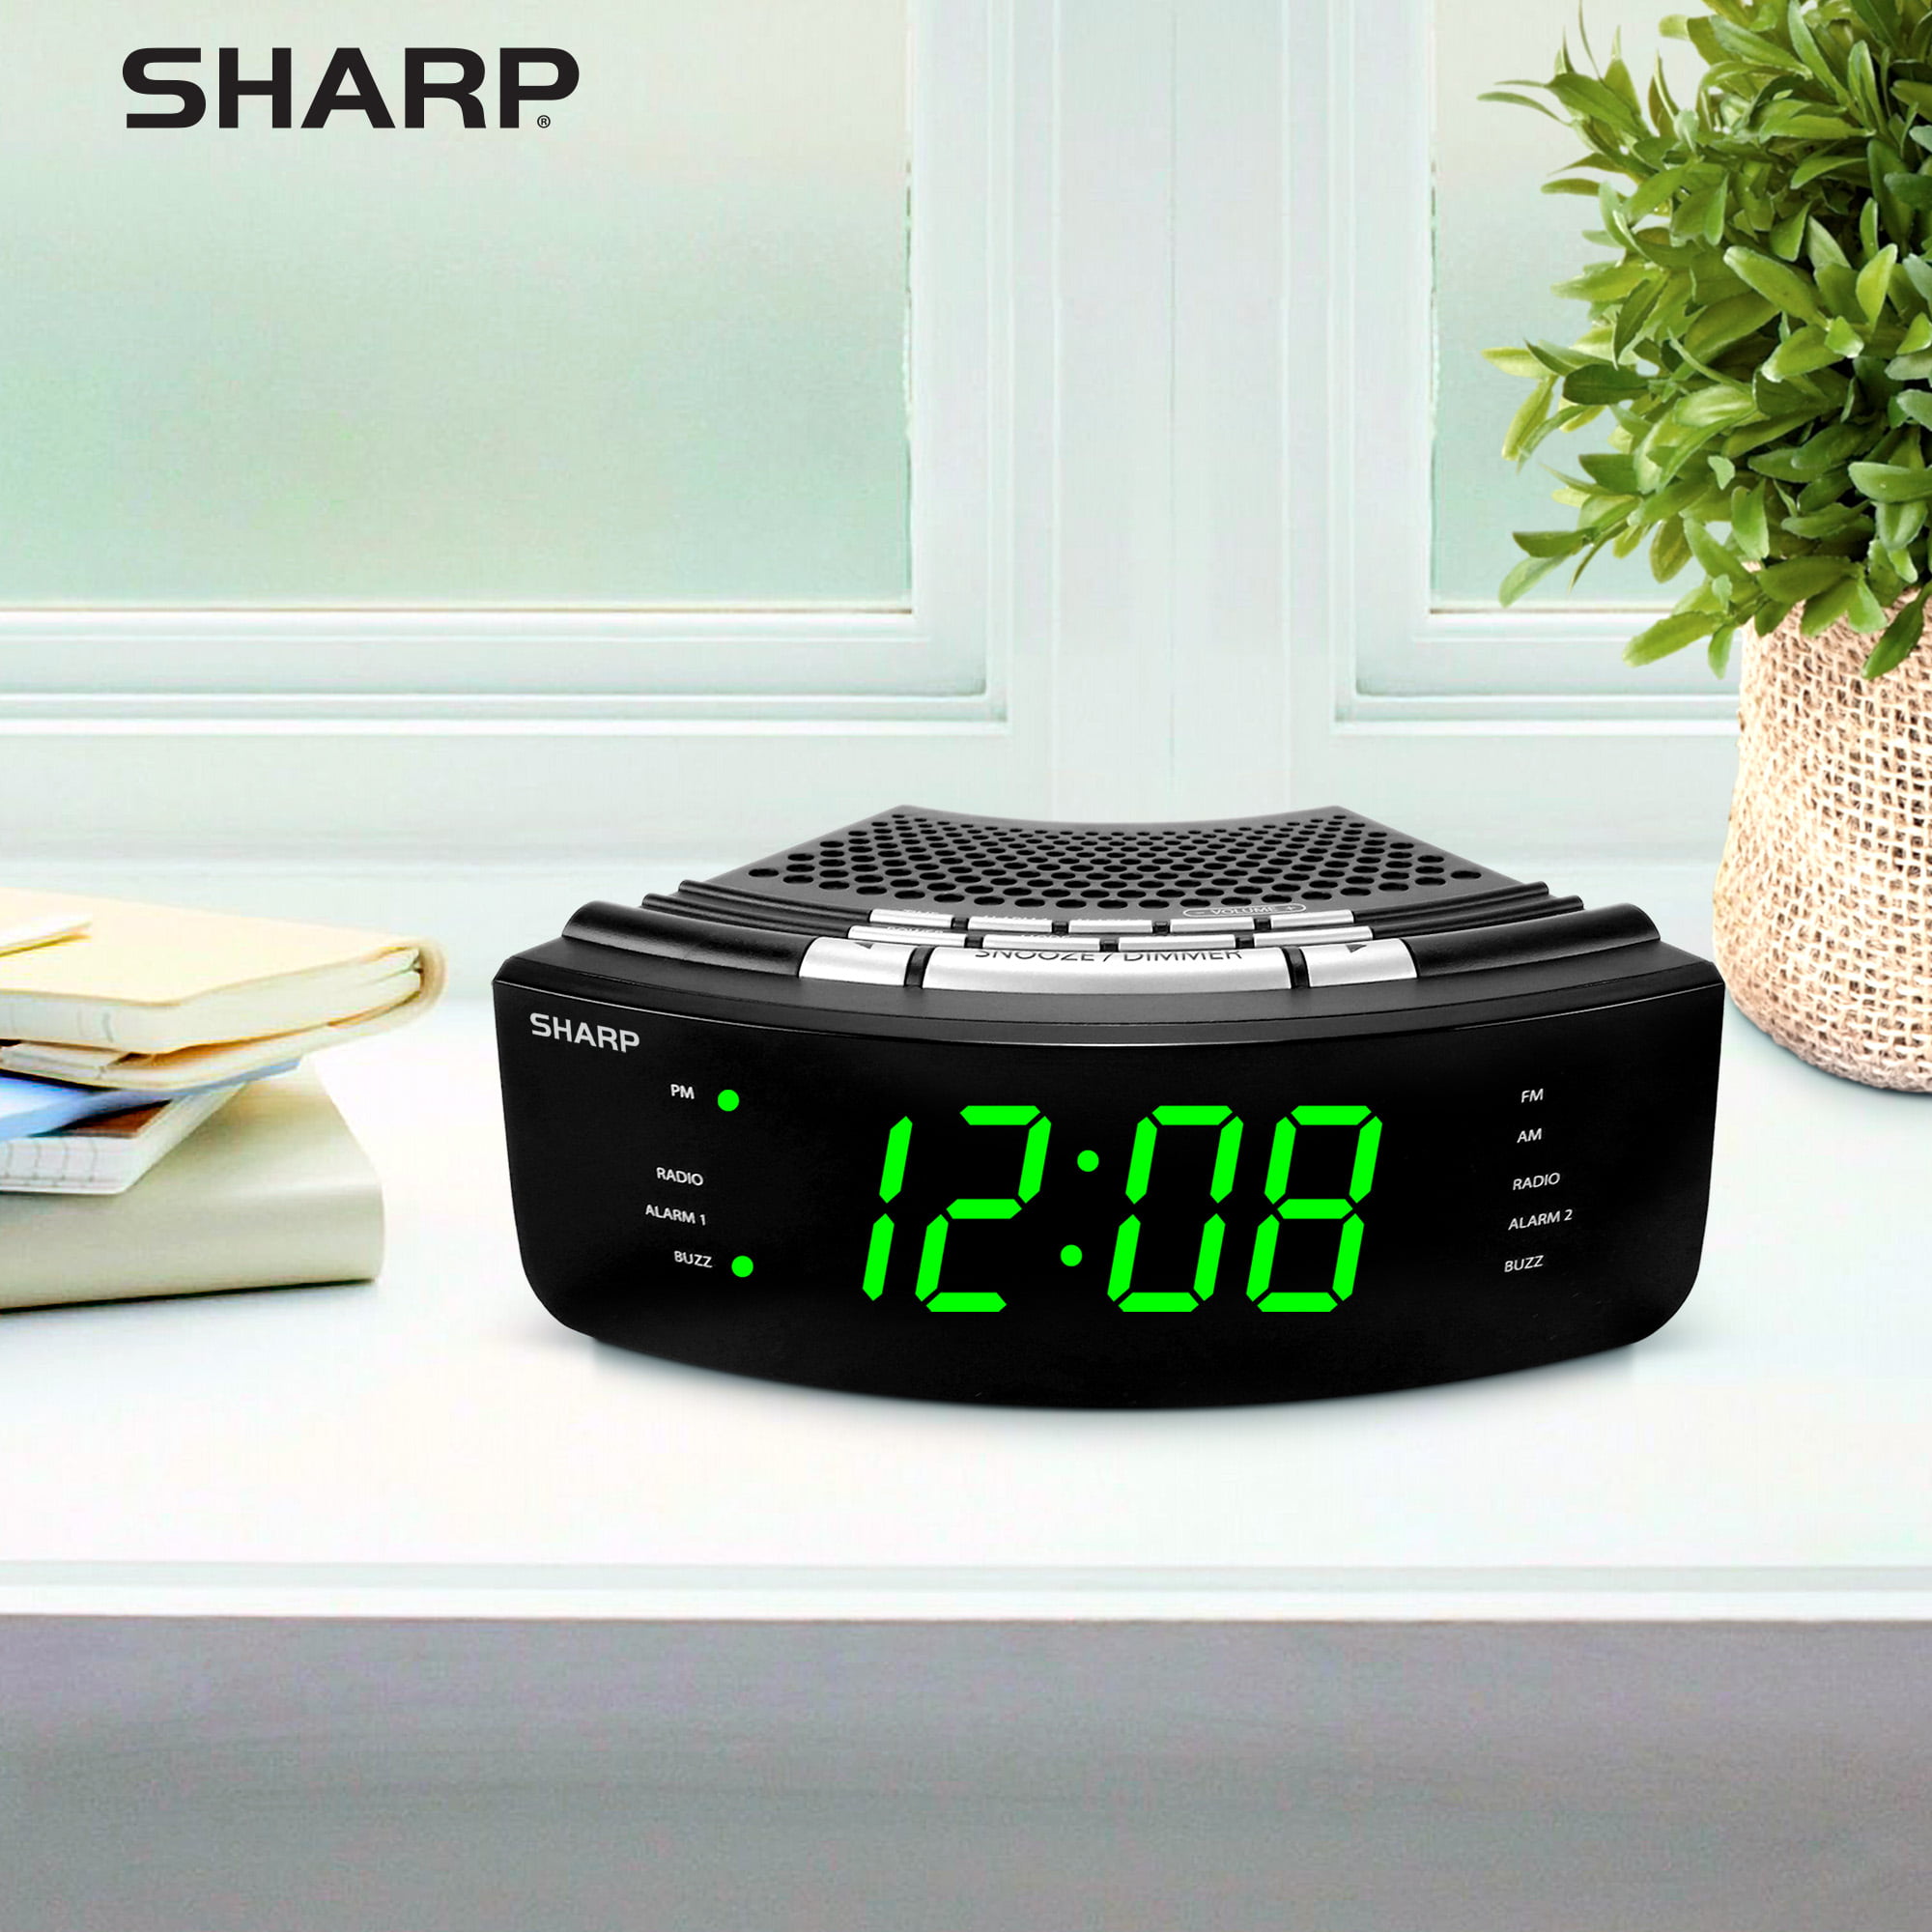 Radio Reloj Sharp Fm Con Altavoz Bluetooth Puerto De Carga Doble Alarma  SHARP